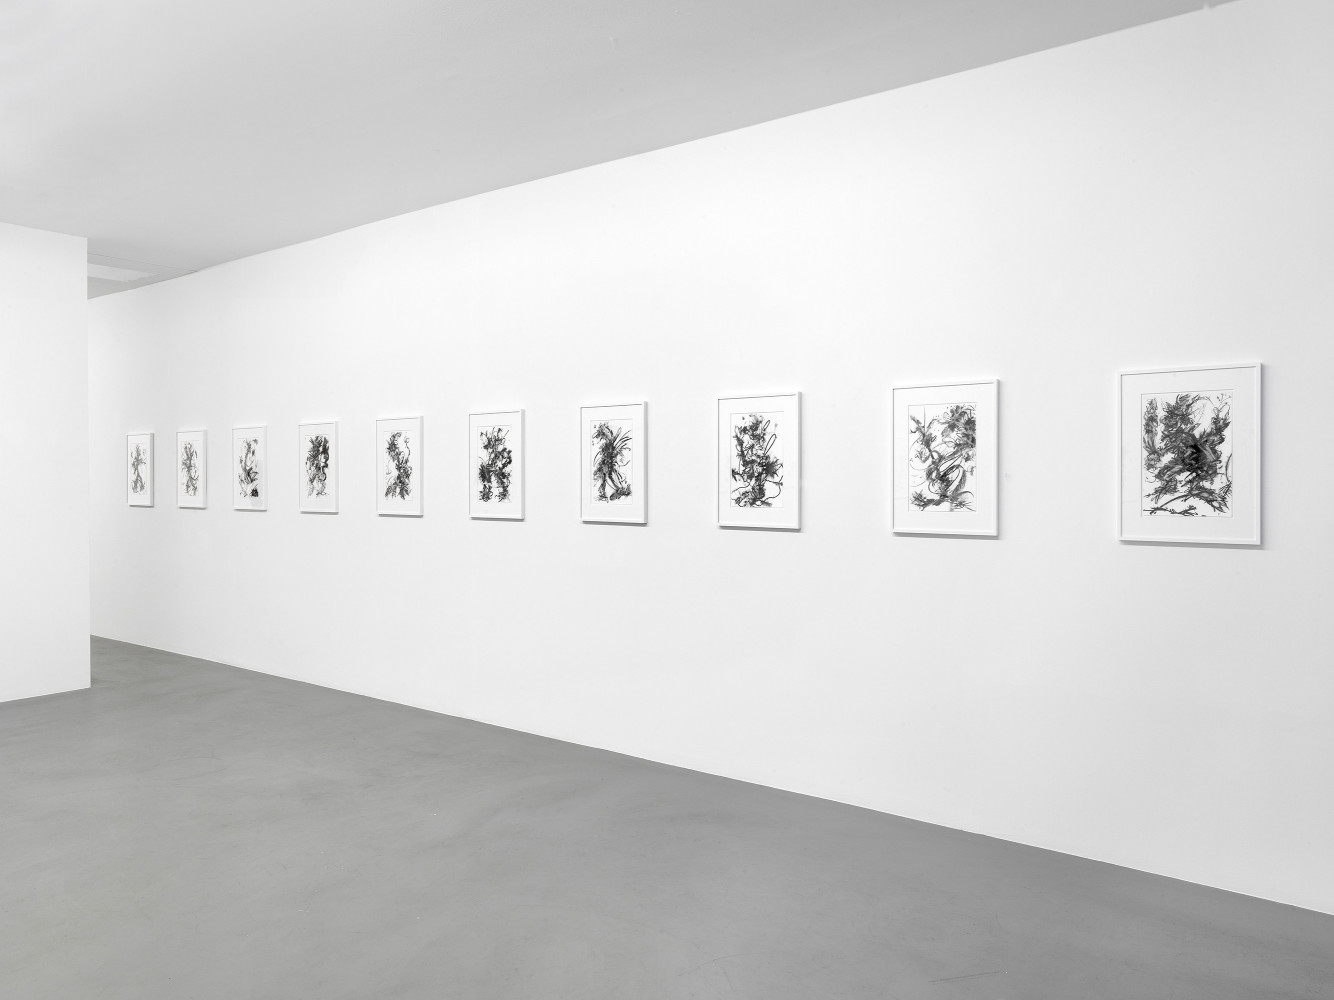 Fiona Rae, ‘Zeichnungen’, Installationsansicht, Buchmann Box, 2014